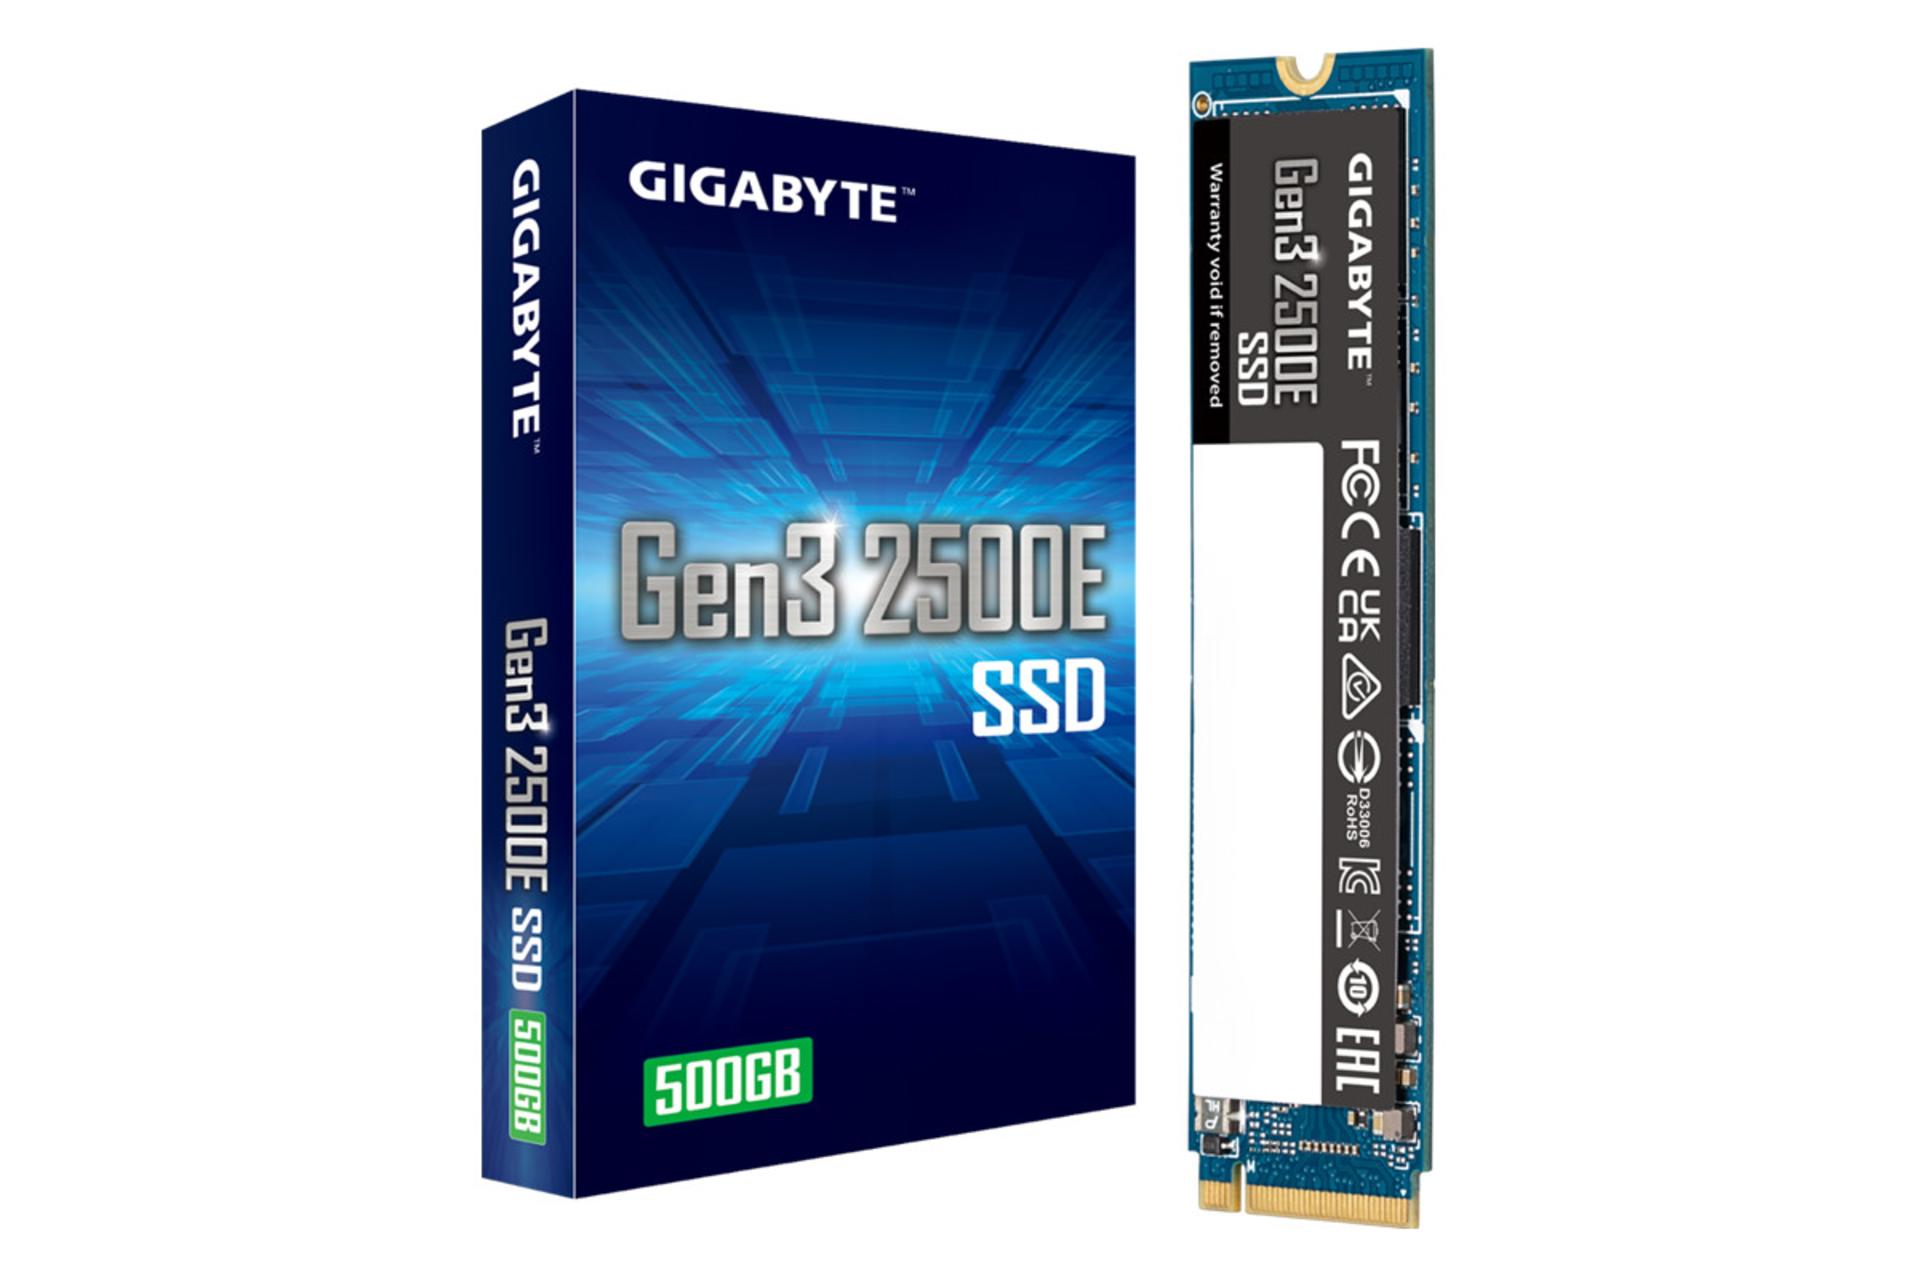 جعبه SSD گیگابایت Gen3 2500E NVMe M.2 ظرفیت 500 گیگابایت